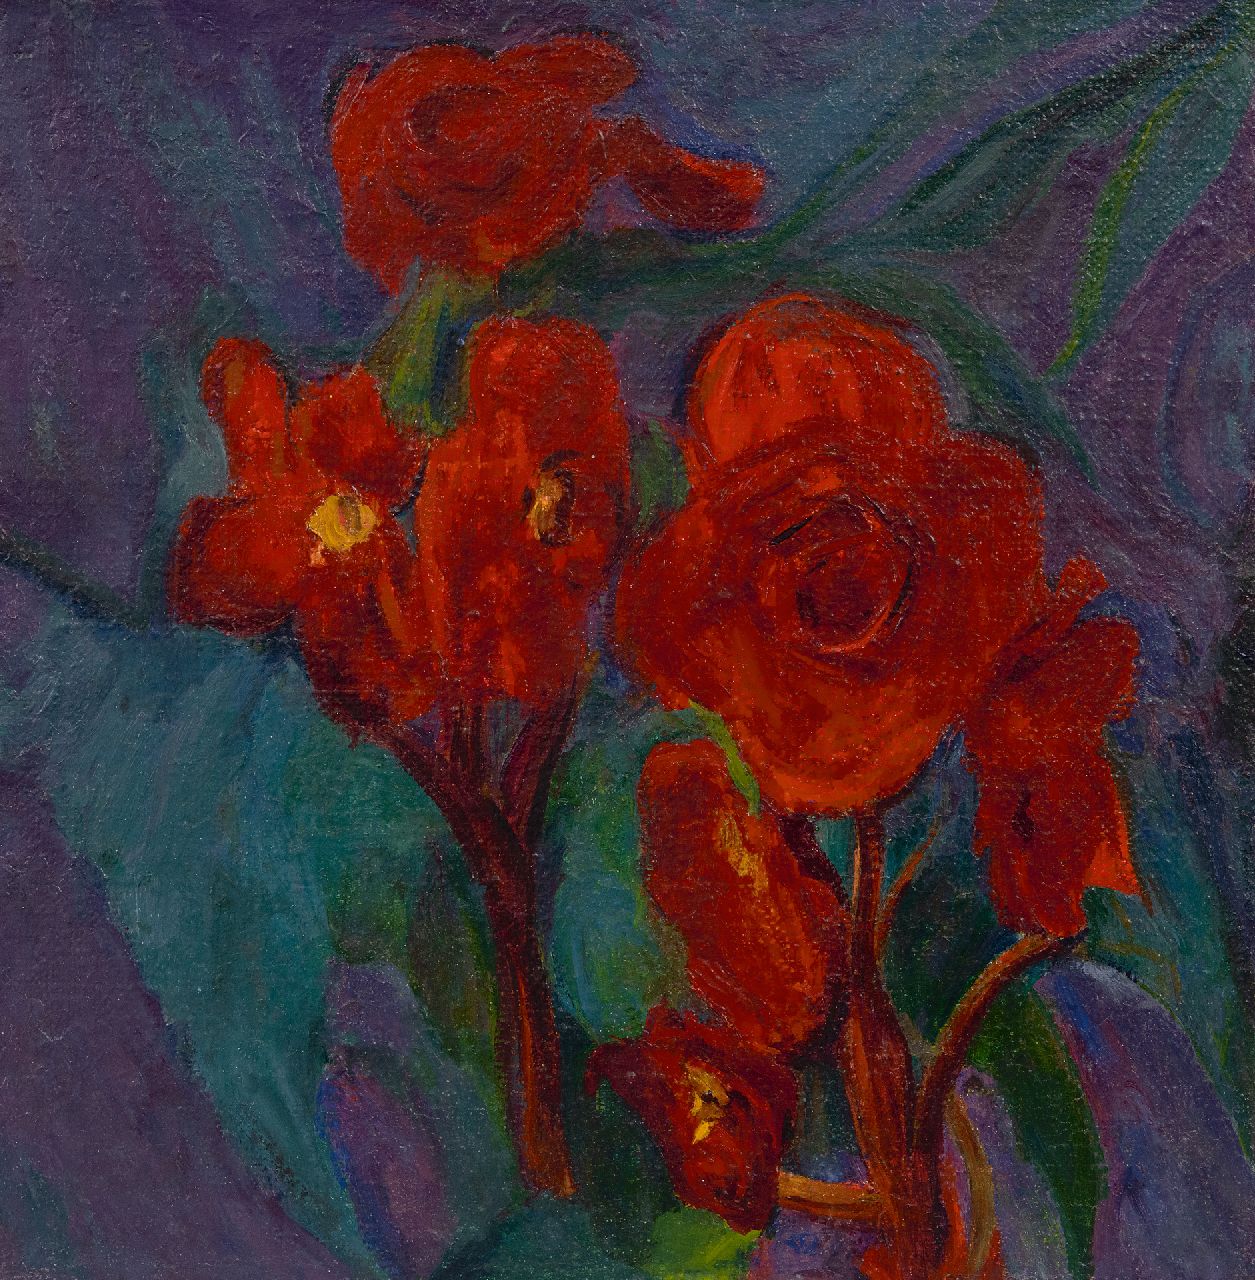 Dijkstra J.  | Johannes 'Johan' Dijkstra | Gemälde zum Verkauf angeboten | Rote Blumen, Öl auf Leinwand 36,0 x 35,8 cm, Unterzeichnet auf dem Keilrahmen